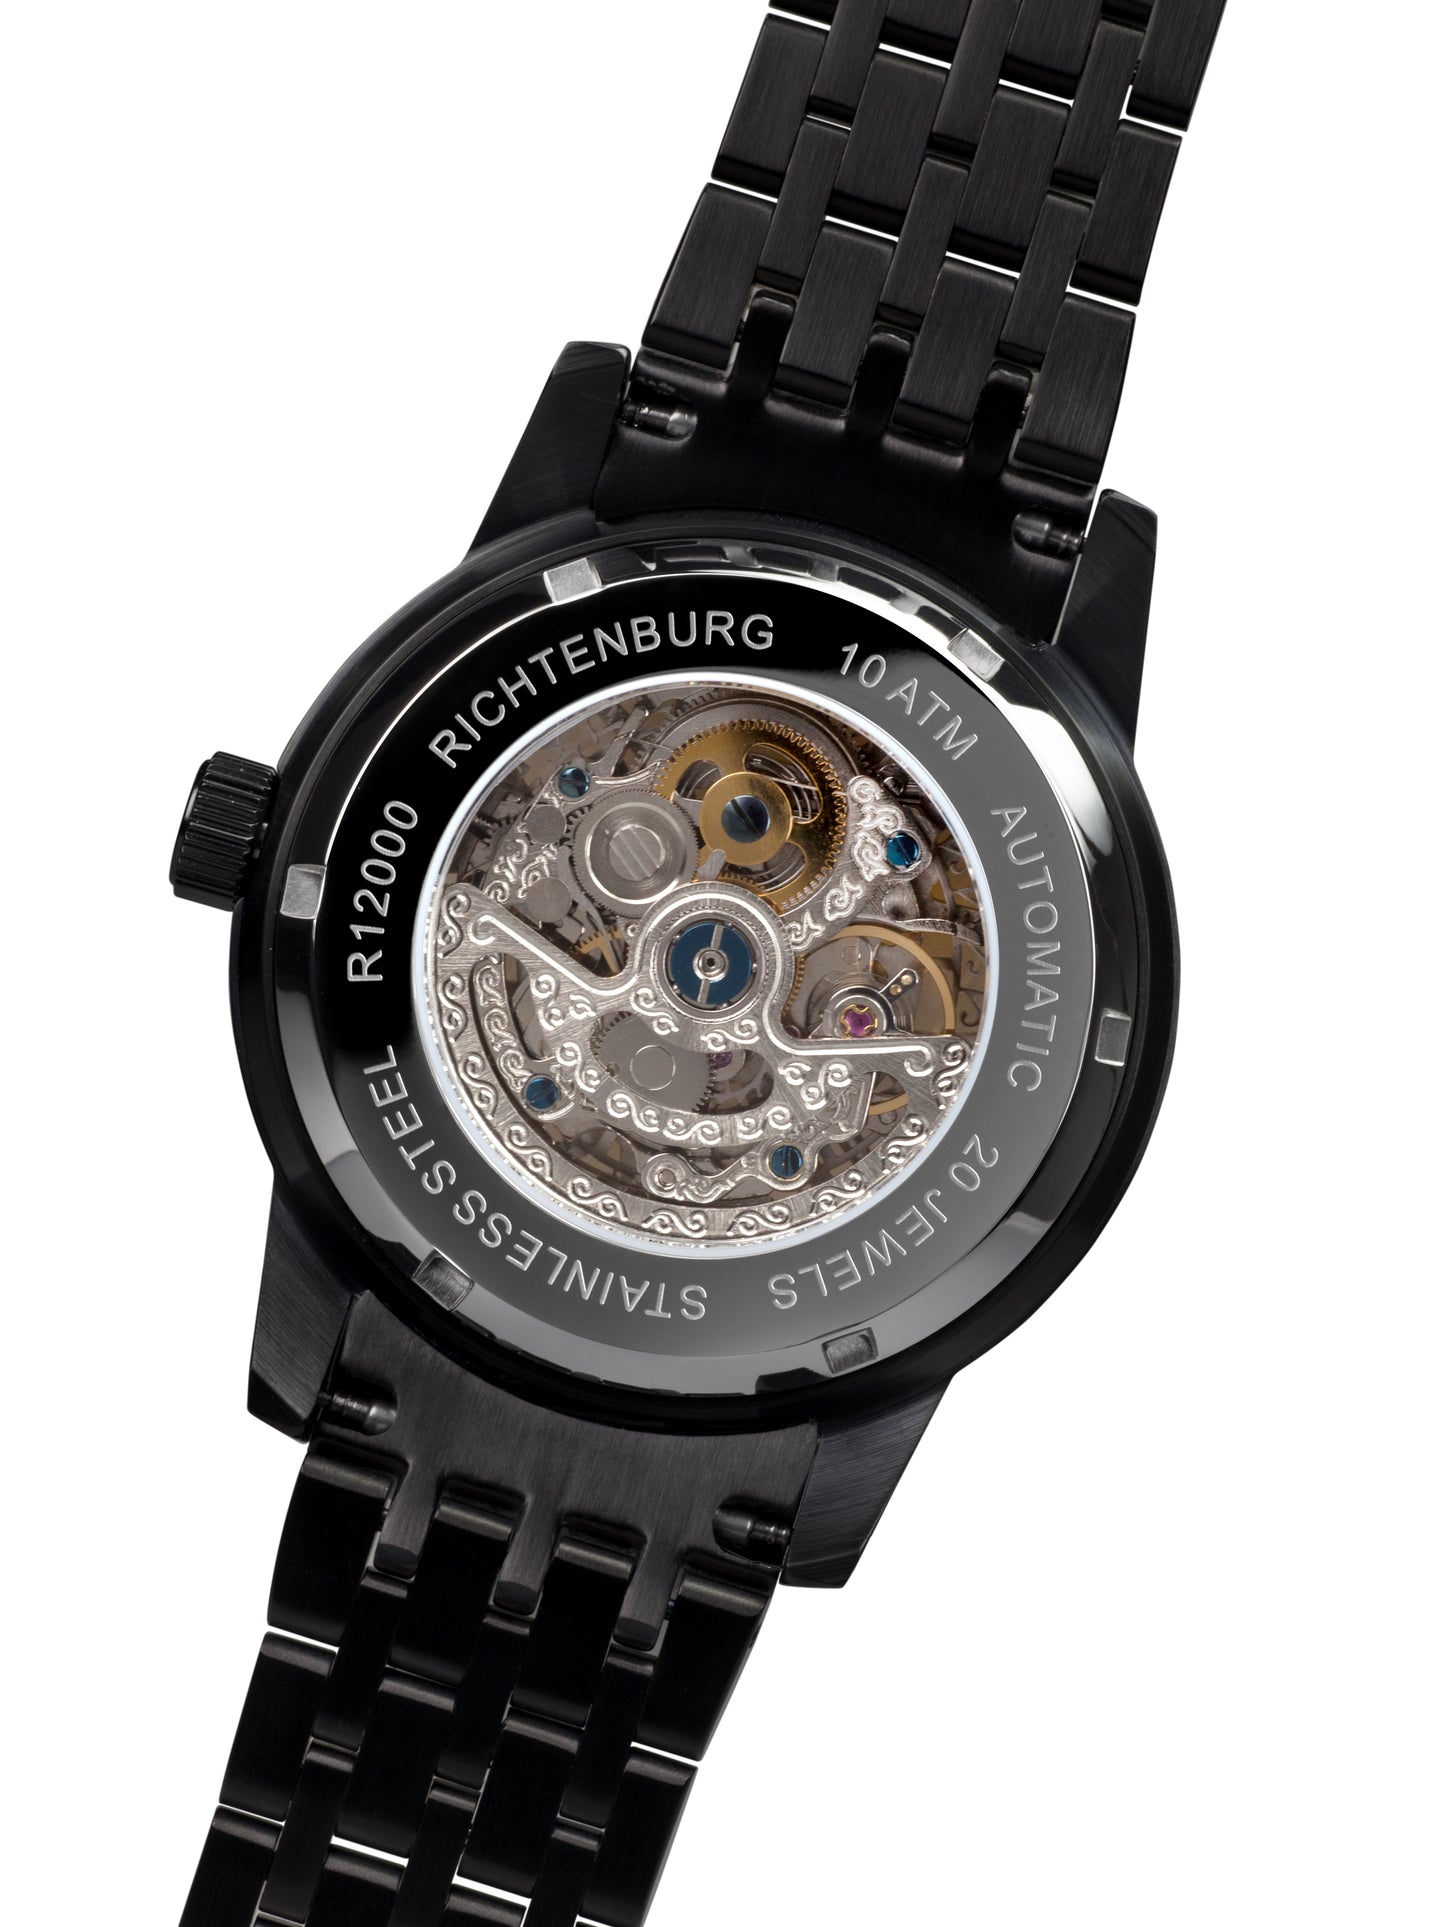 Automatic watches — Speedwheel — Richtenburg — gold IP